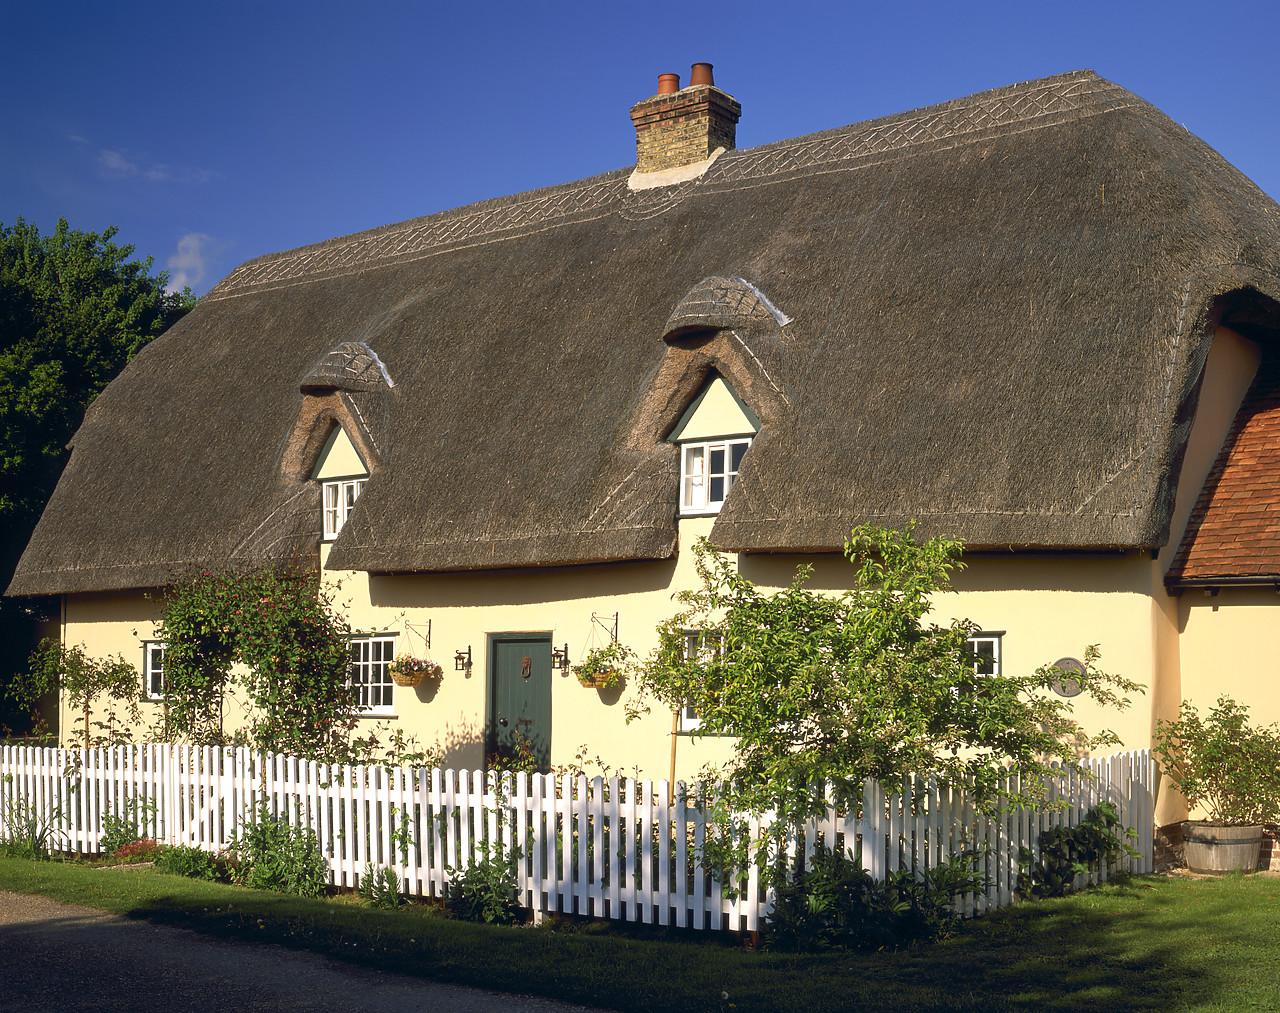 #050131-1 - Thatched Cottage, Barrington, Cambridgeshire, England